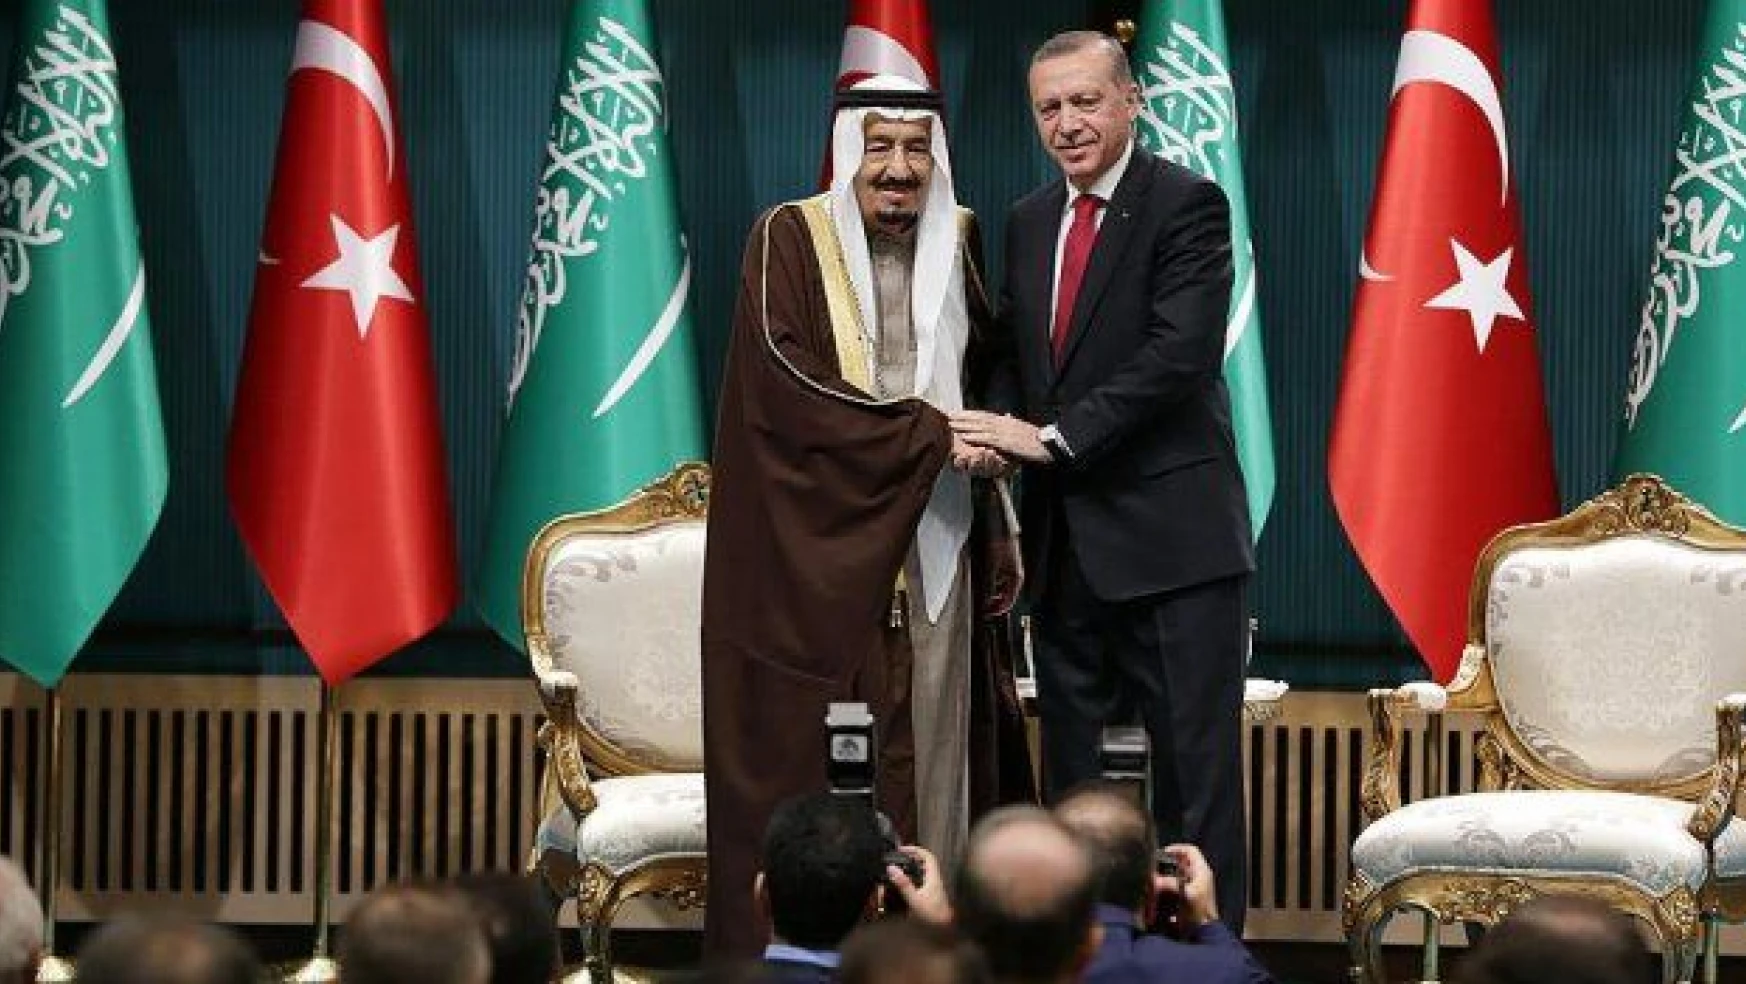 Cumhurbaşkanı Erdoğan, Kral Selman'a Devlet Nişanı takdim etti